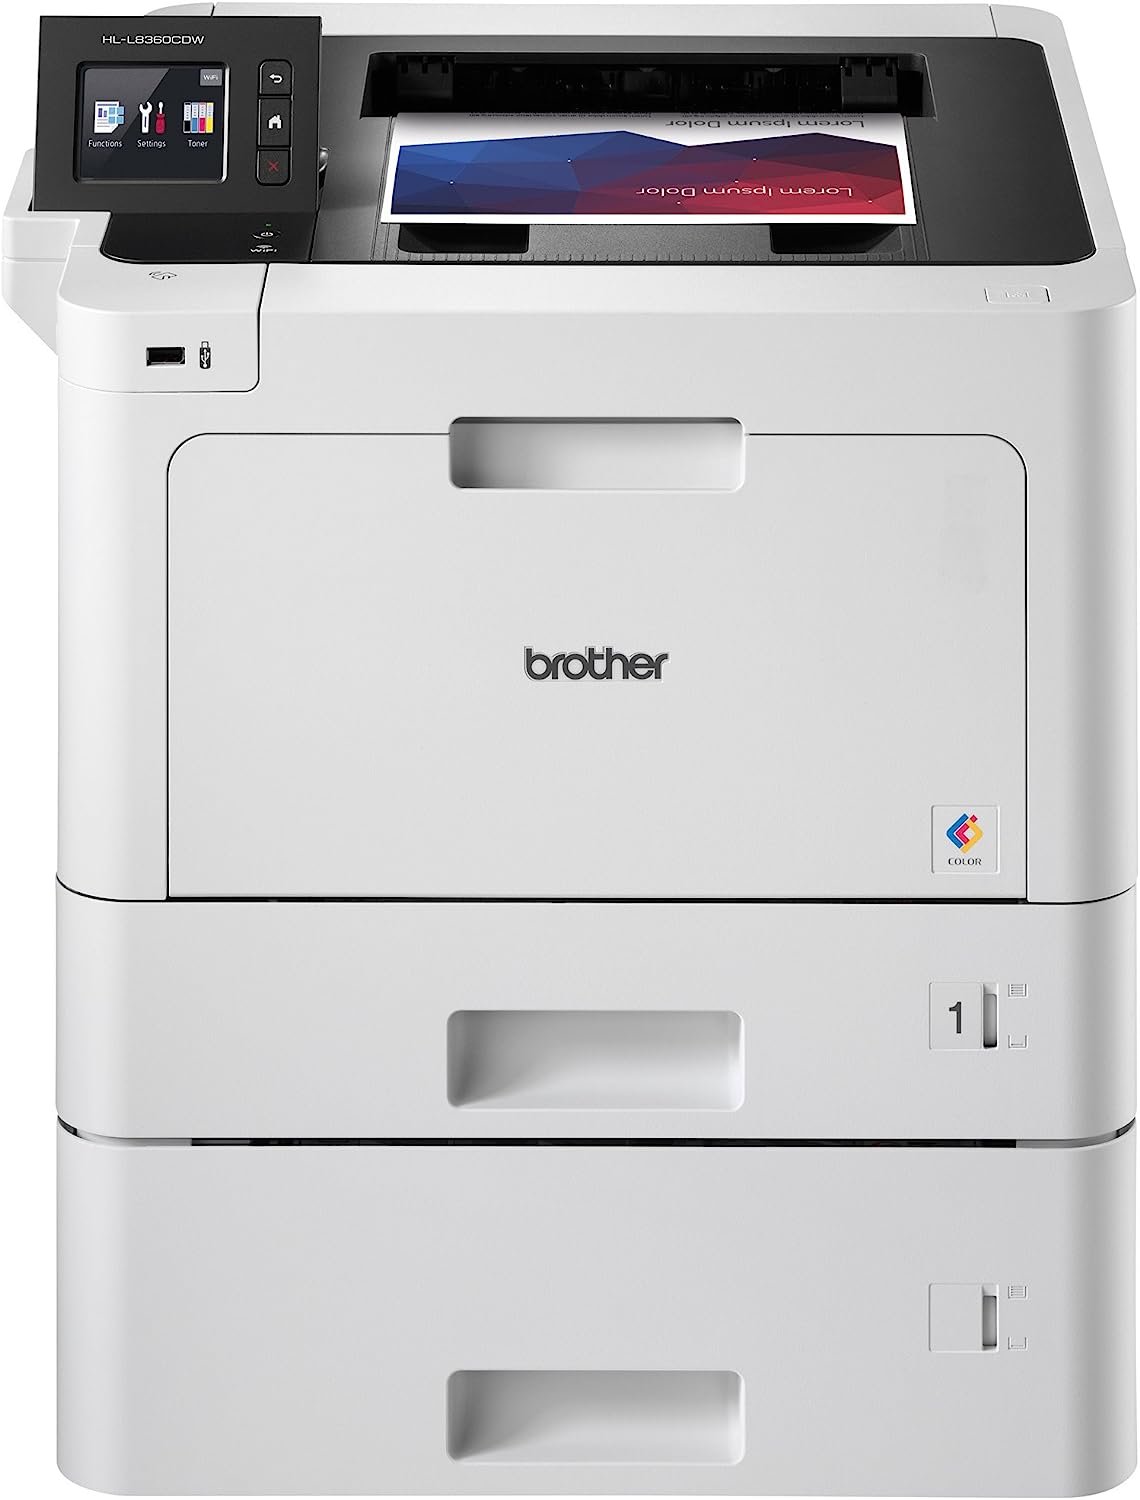 Brother Business Color Laser Printer, HLL8360CDWT, [...]